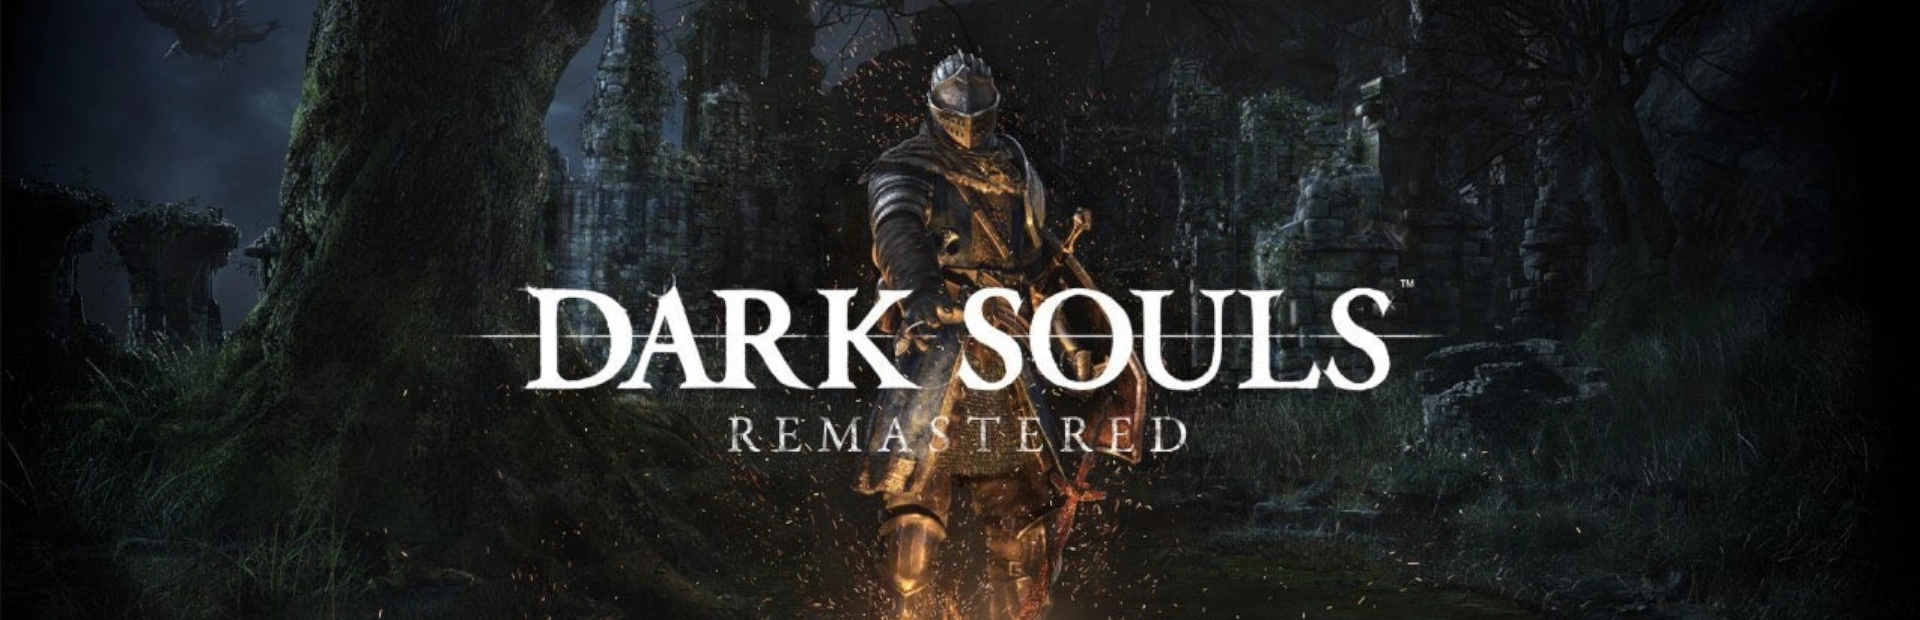 دانلود بازی Dark Souls Remastered برای کامپیوتر | گیمباتو